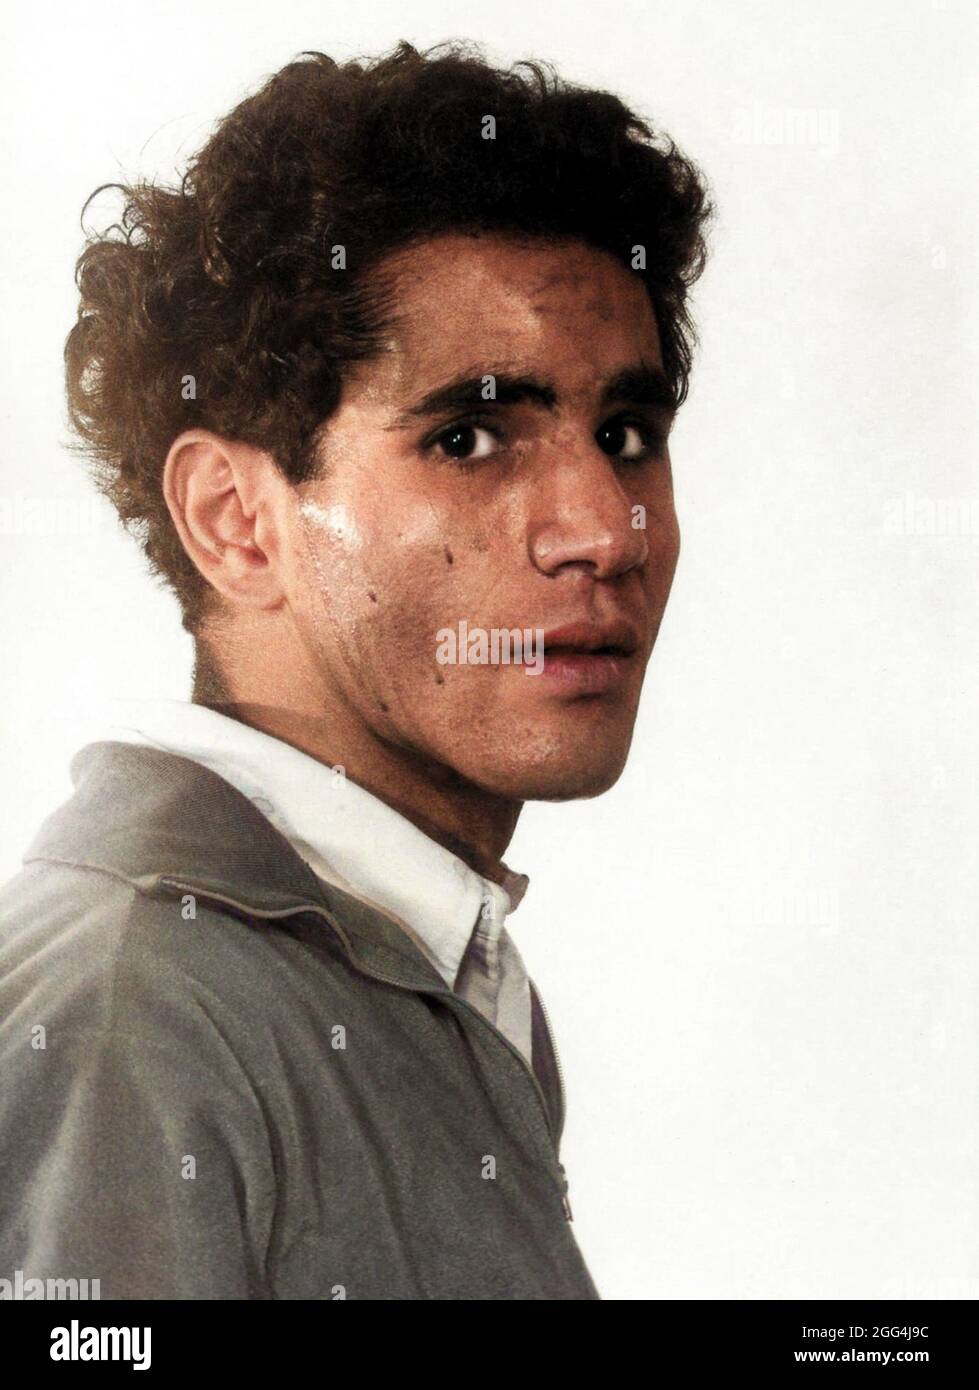 1968 , 5 juin , Los Angeles , Etats-Unis : le citoyen jordanien d'origine palestinienne SIRHAN SIRHAN ( Sirhan Bishara Sirhan , né en 1944 ), le département de police de Los Angeles mug shot, le tueur qui a assassiné le sénateur ROBERT KENNEDY le jour du 5 juin 1968 . Photographe inconnu . NUMÉRIQUEMENT COLORISÉ .- BOB - PORTRAIT - RITRATTO - FOTO SEGNALETICA DELLA POLIZIA - MUG-SHOT - MUGSHOT - ASSASSINO - CRONACA NERA - KILLER - COMPLOT - COMPLOTTO - TERRORISTA - TERRORISTE - ERGASTOLO - ERGASTOLANO - CARCERATO -- ARCHIVIO GBB Banque D'Images